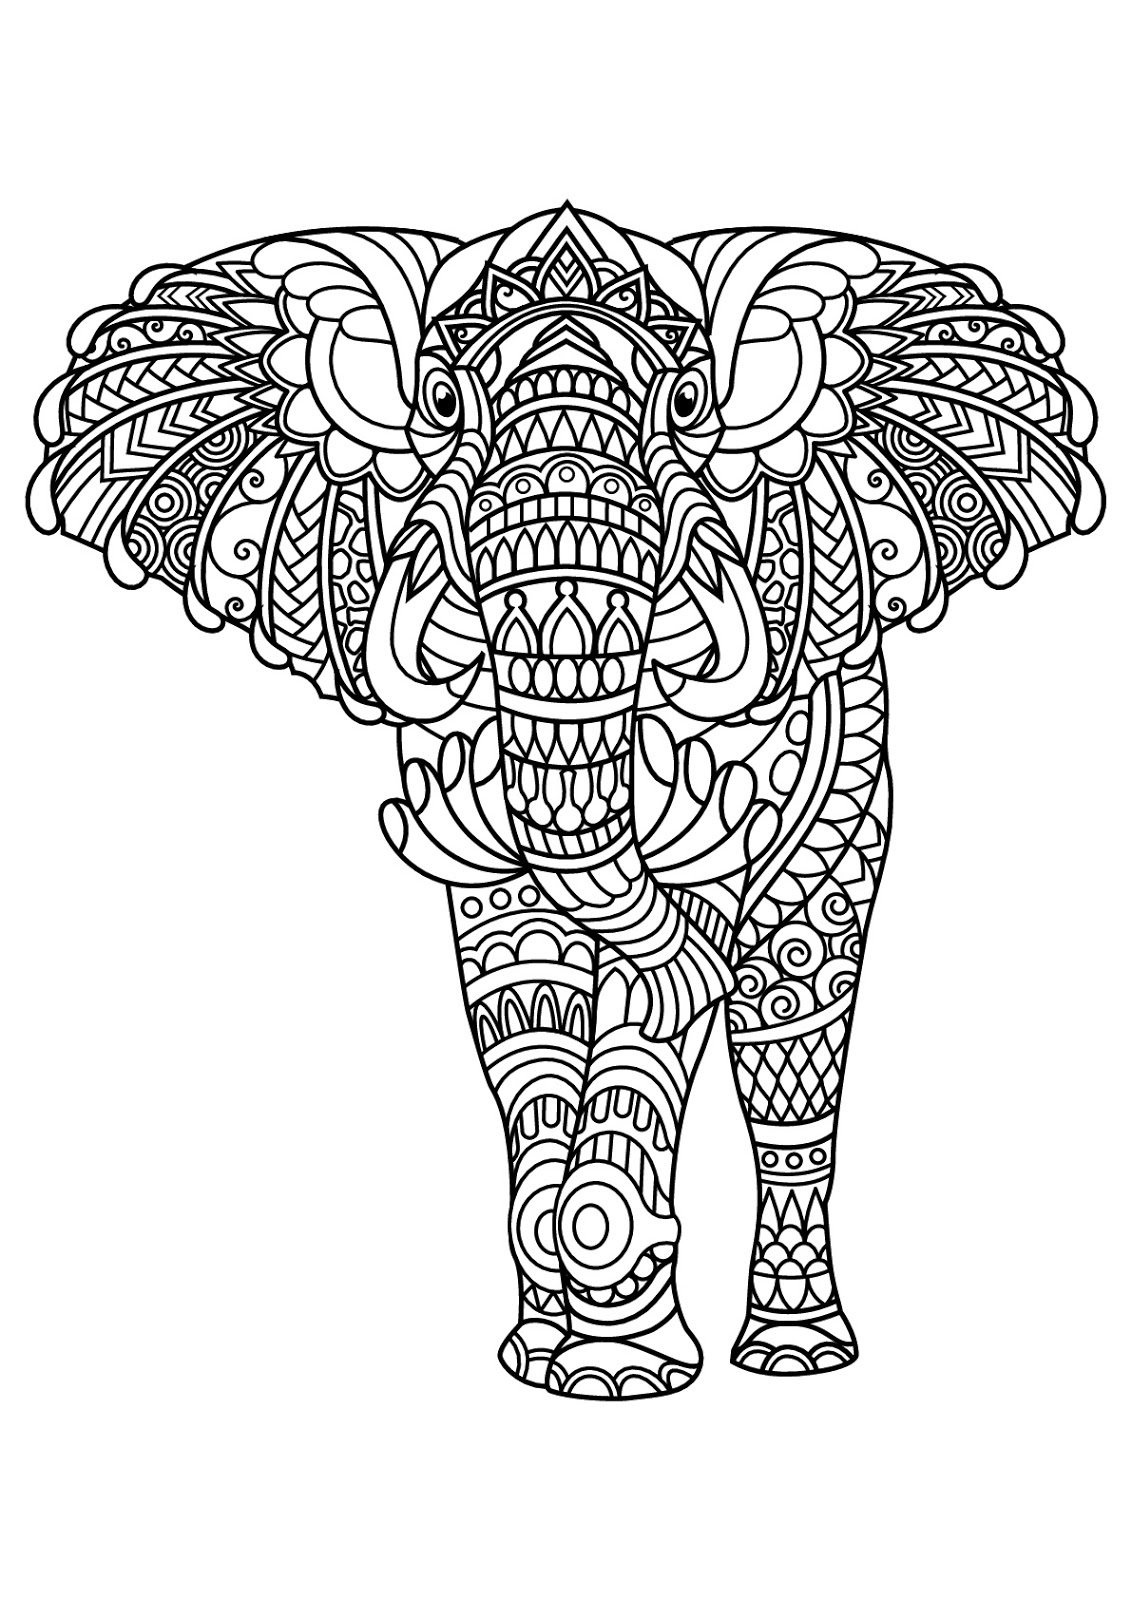 Tranh tô màu chú voi được vẽ lên người các họa tiết